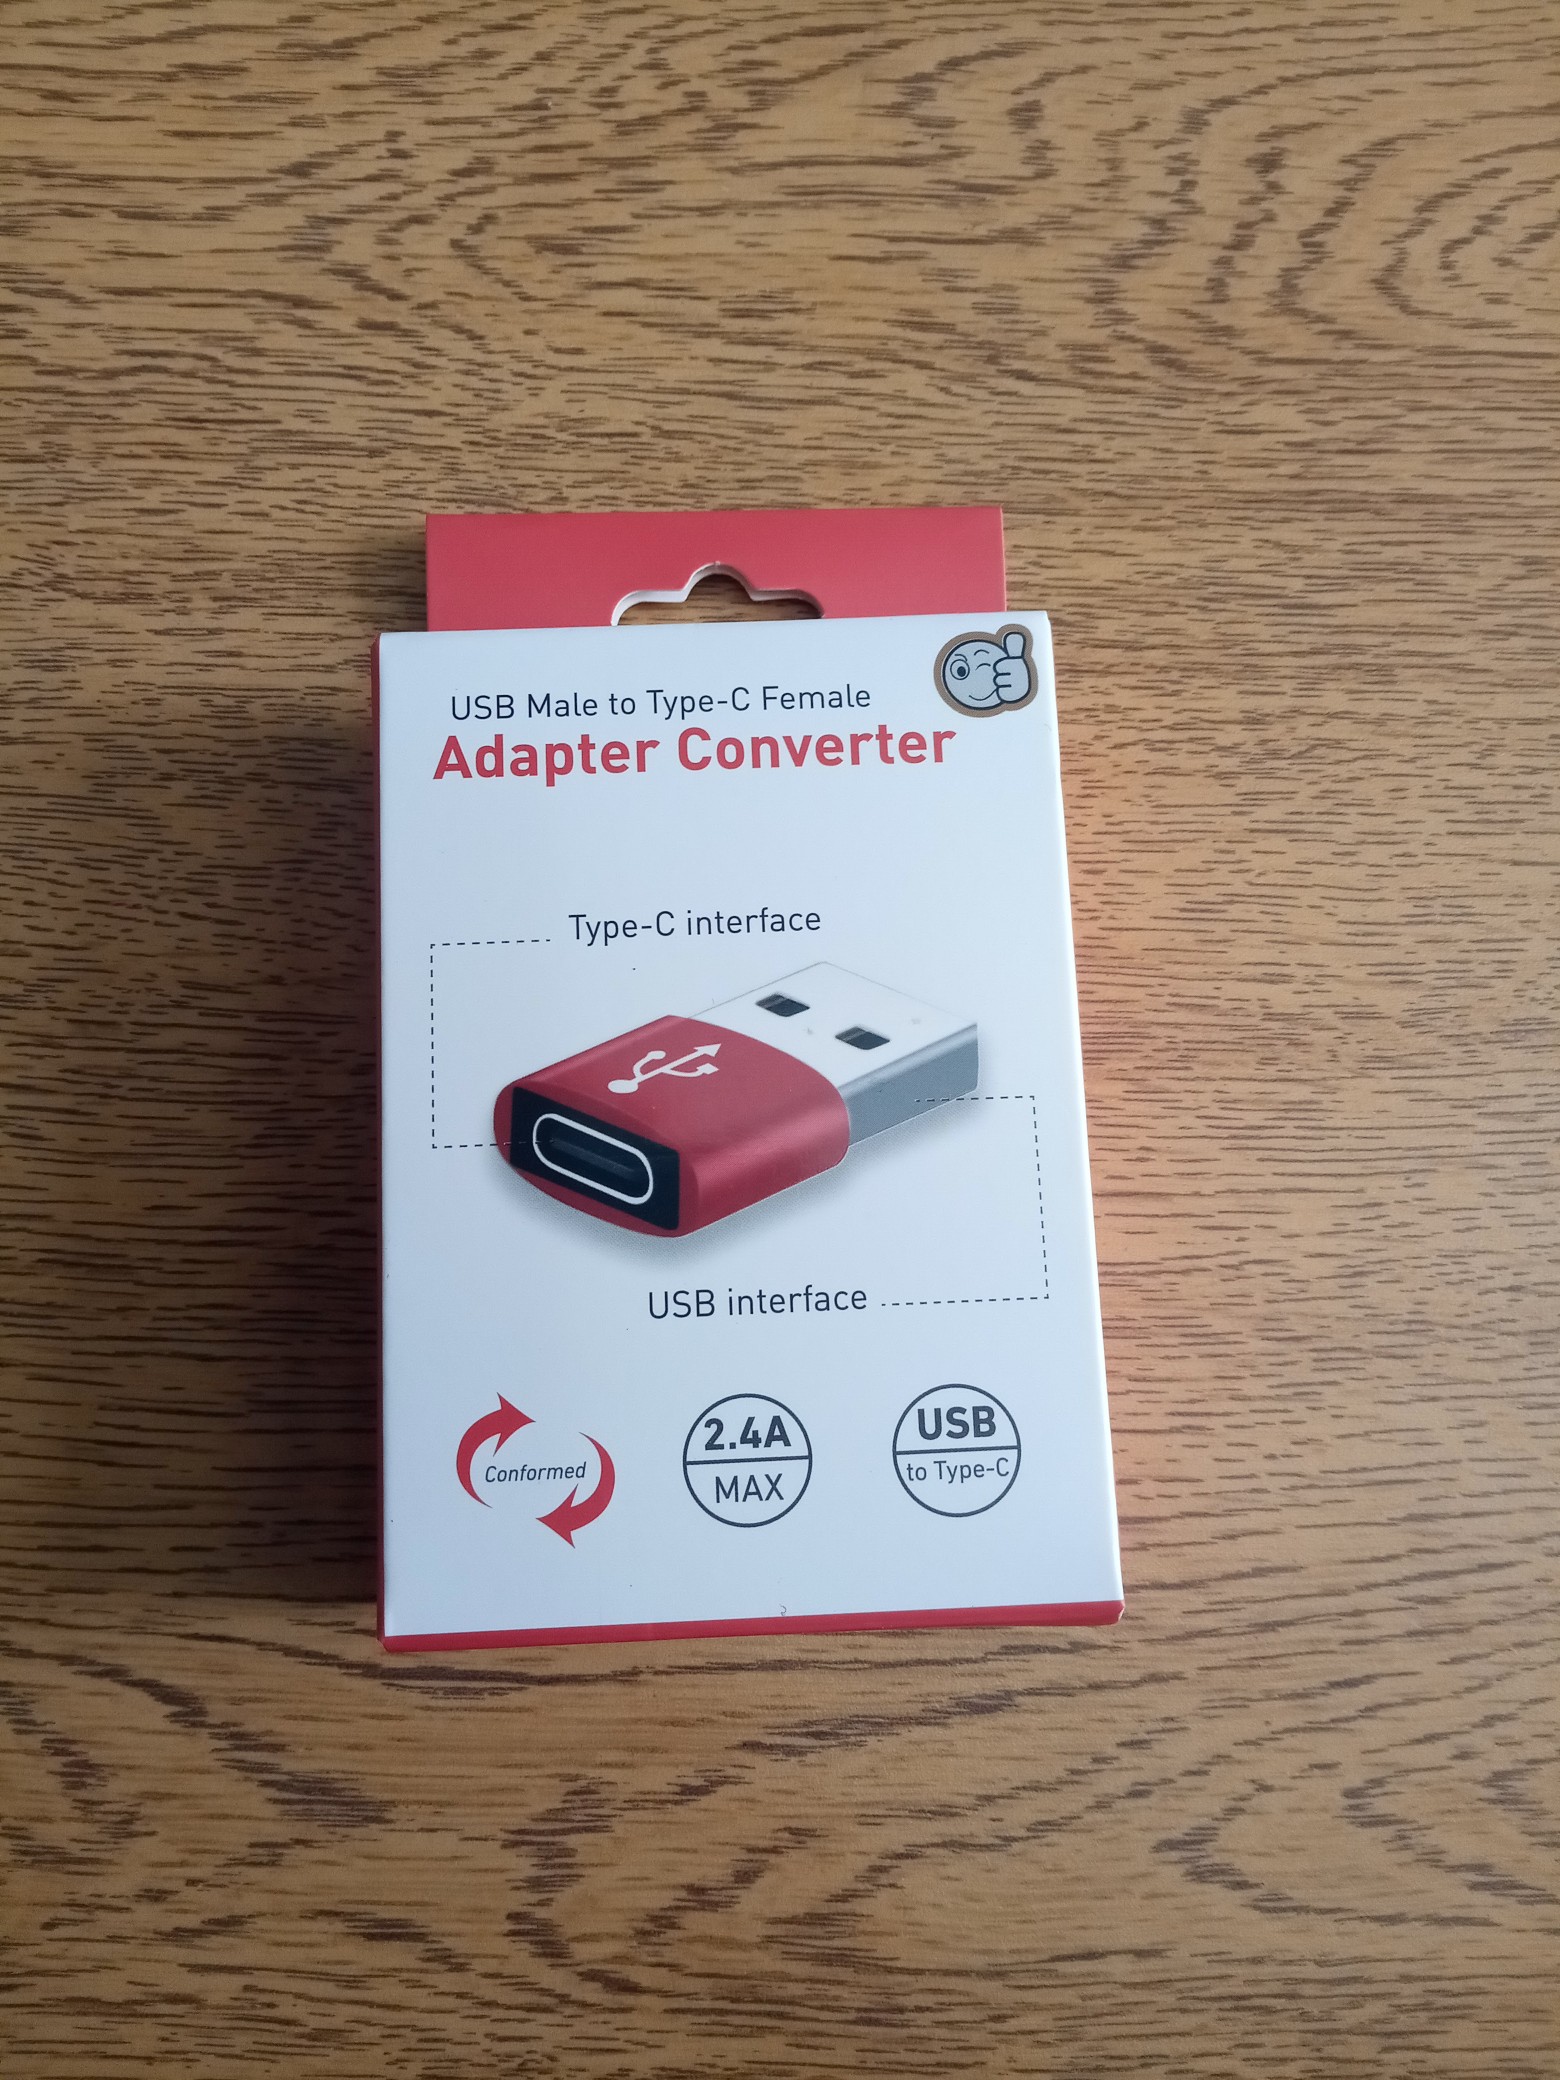 accesorios para electronica - Adaptador USB, Macho a Hembra Tipo C